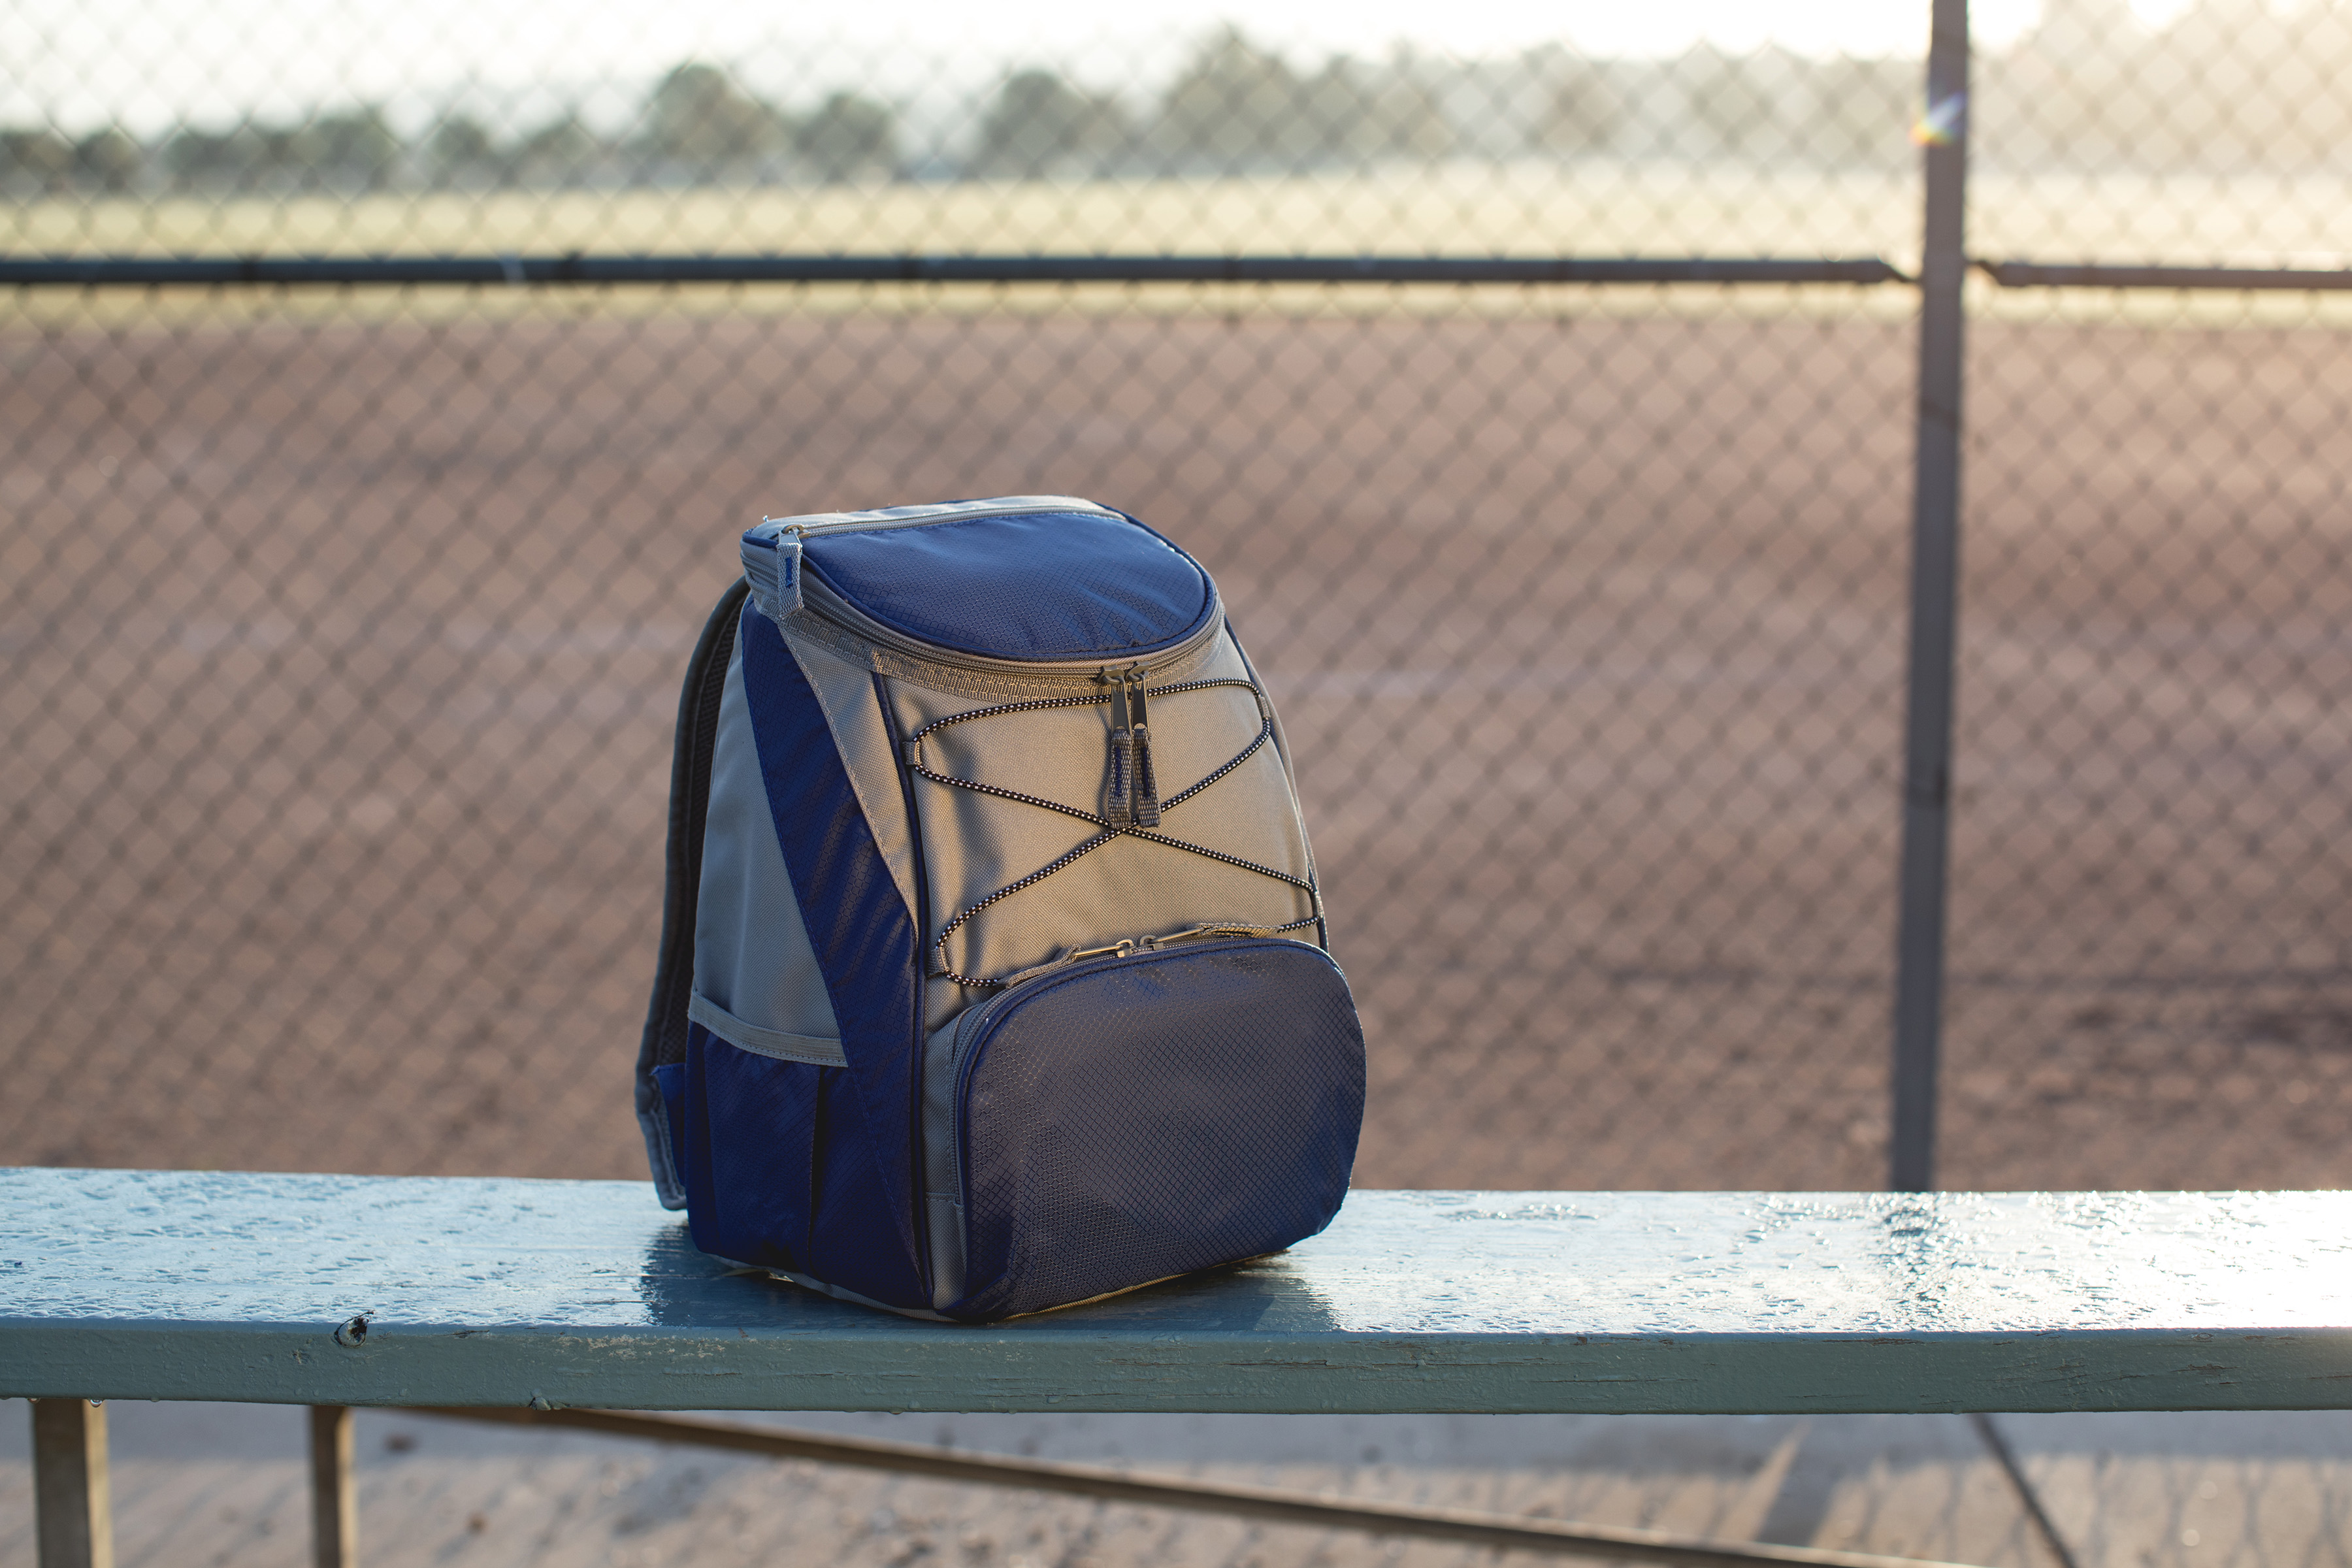 Chicago Cubs - PTX Backpack Cooler